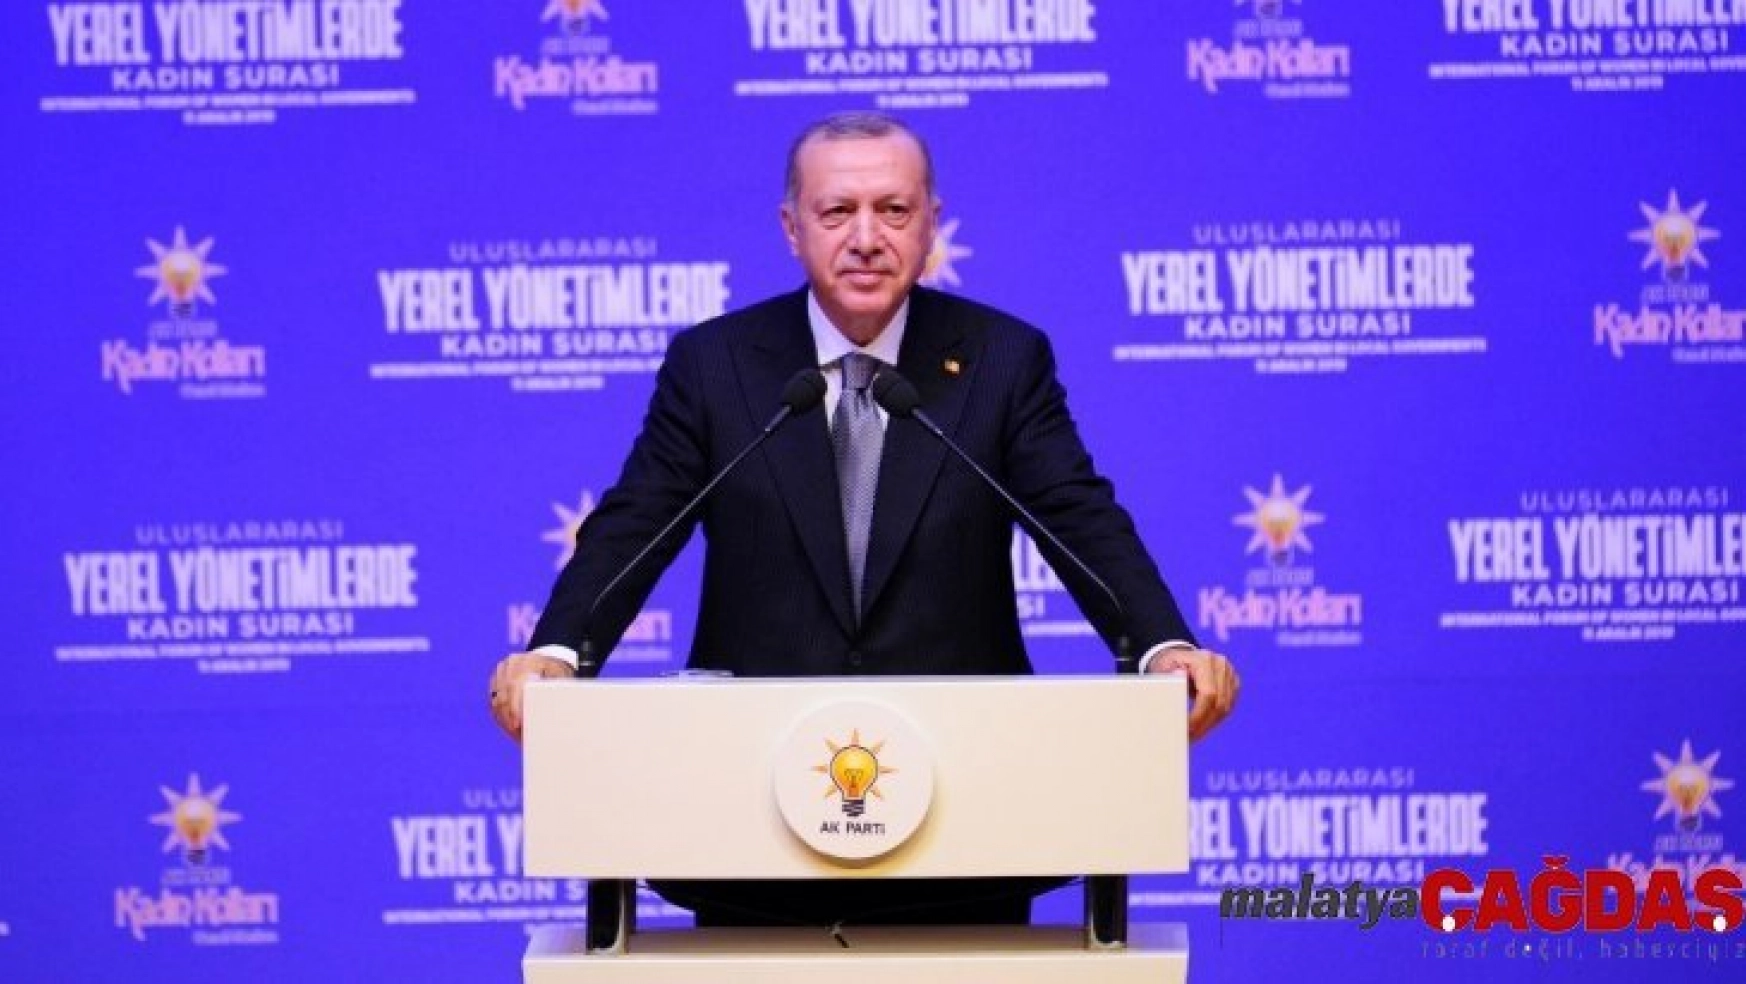 Cumhurbaşkanı Erdoğan: 'Çalışmak kadının aile içindeki önemine ortadan kaldırmaz'